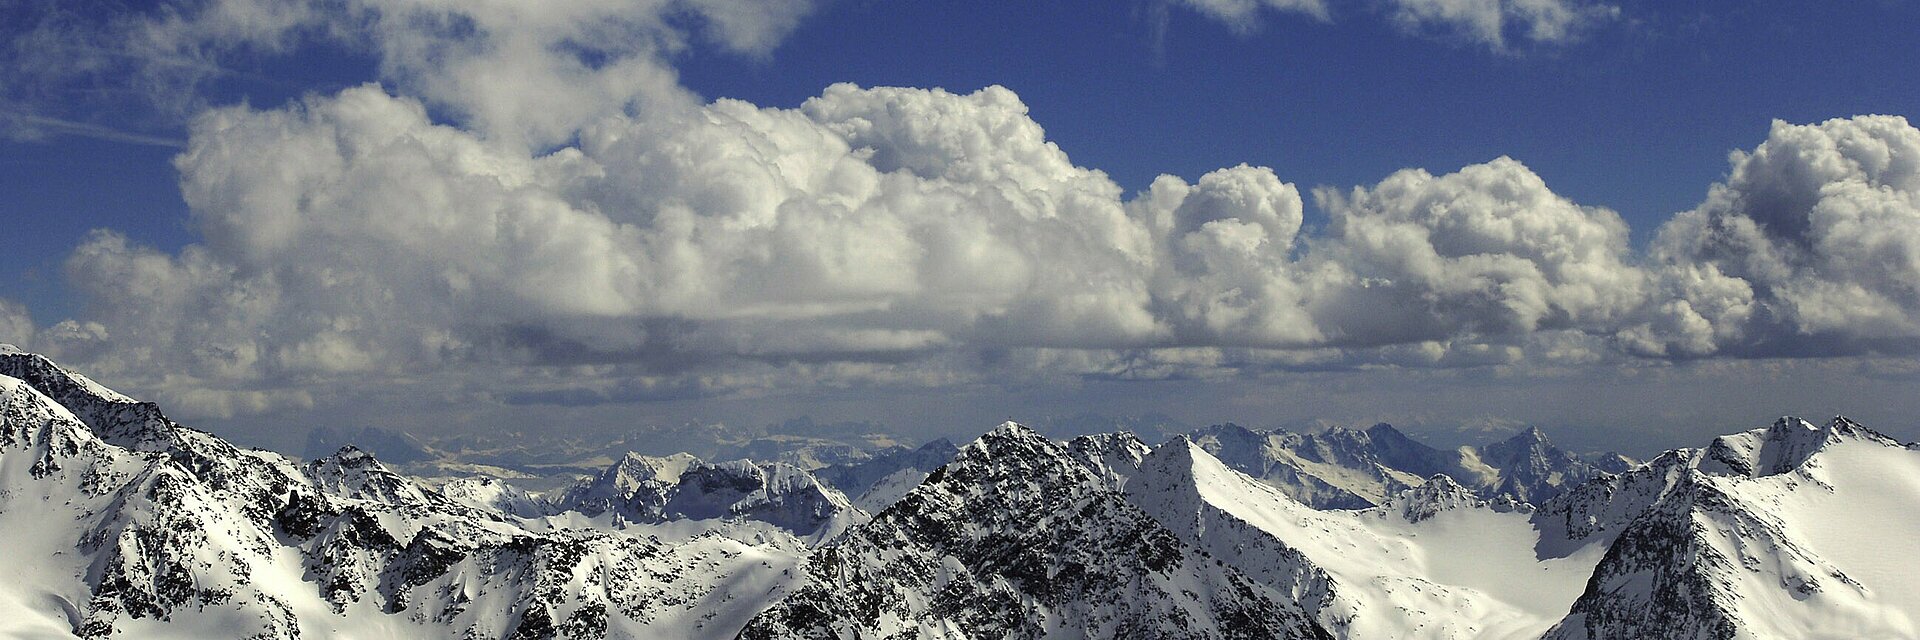 Ötztaler Alpen, Tirol